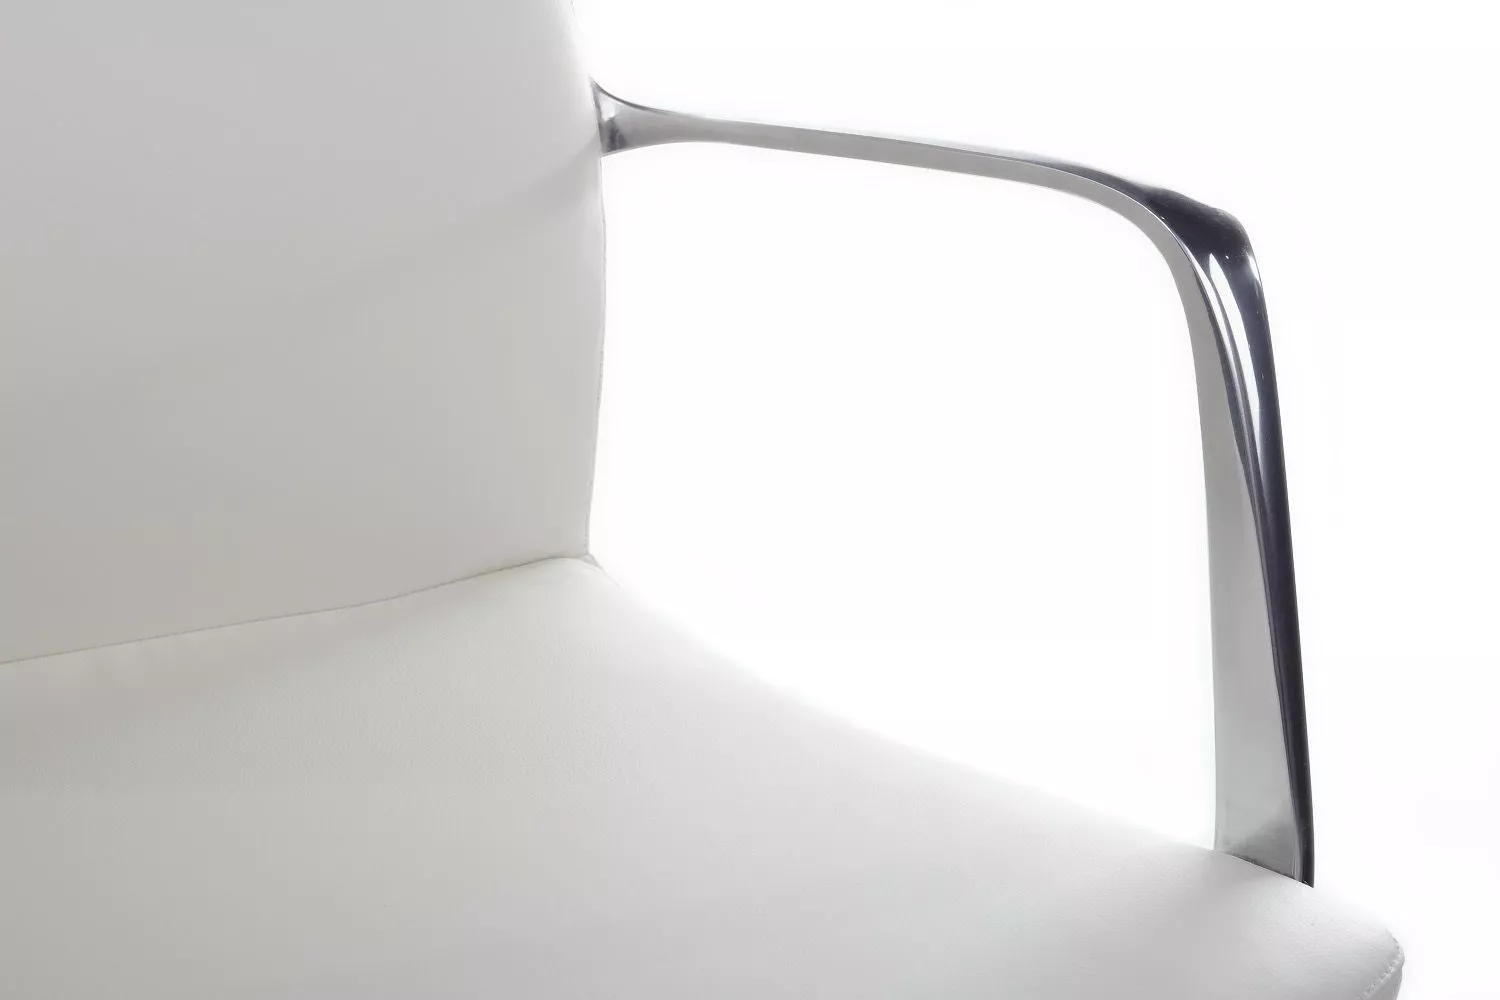 Кресло RIVA DESIGN Plaza-M (FK004-В12) белый